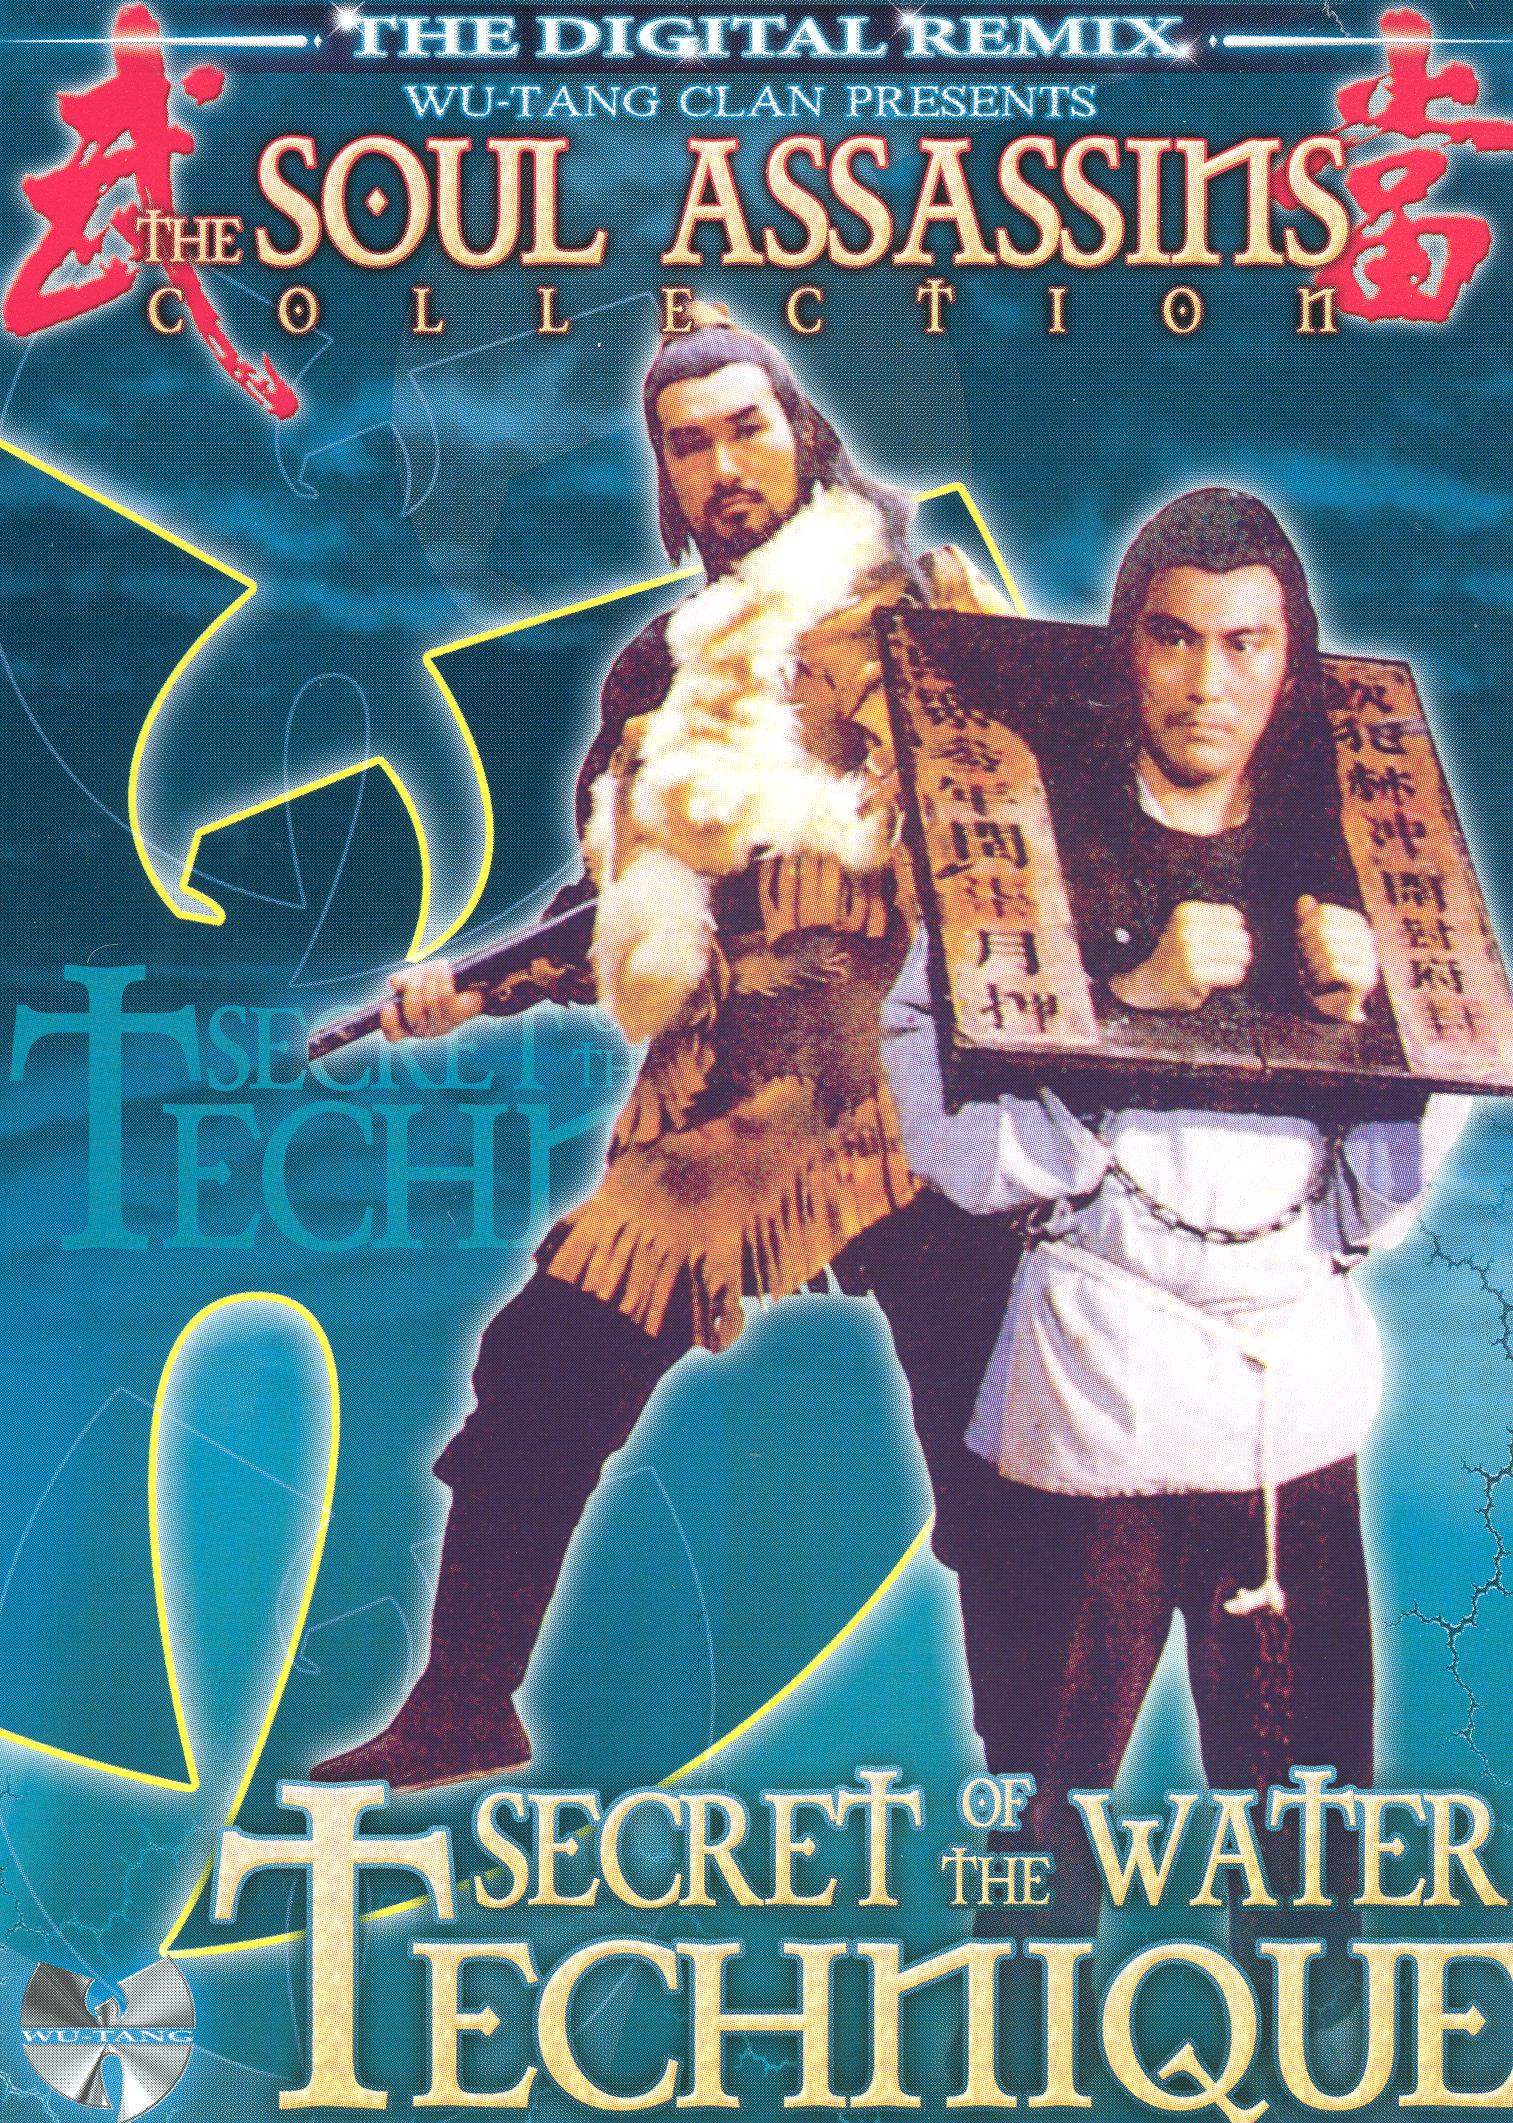 Shui xu wai zhuan (1984) Screenshot 3 